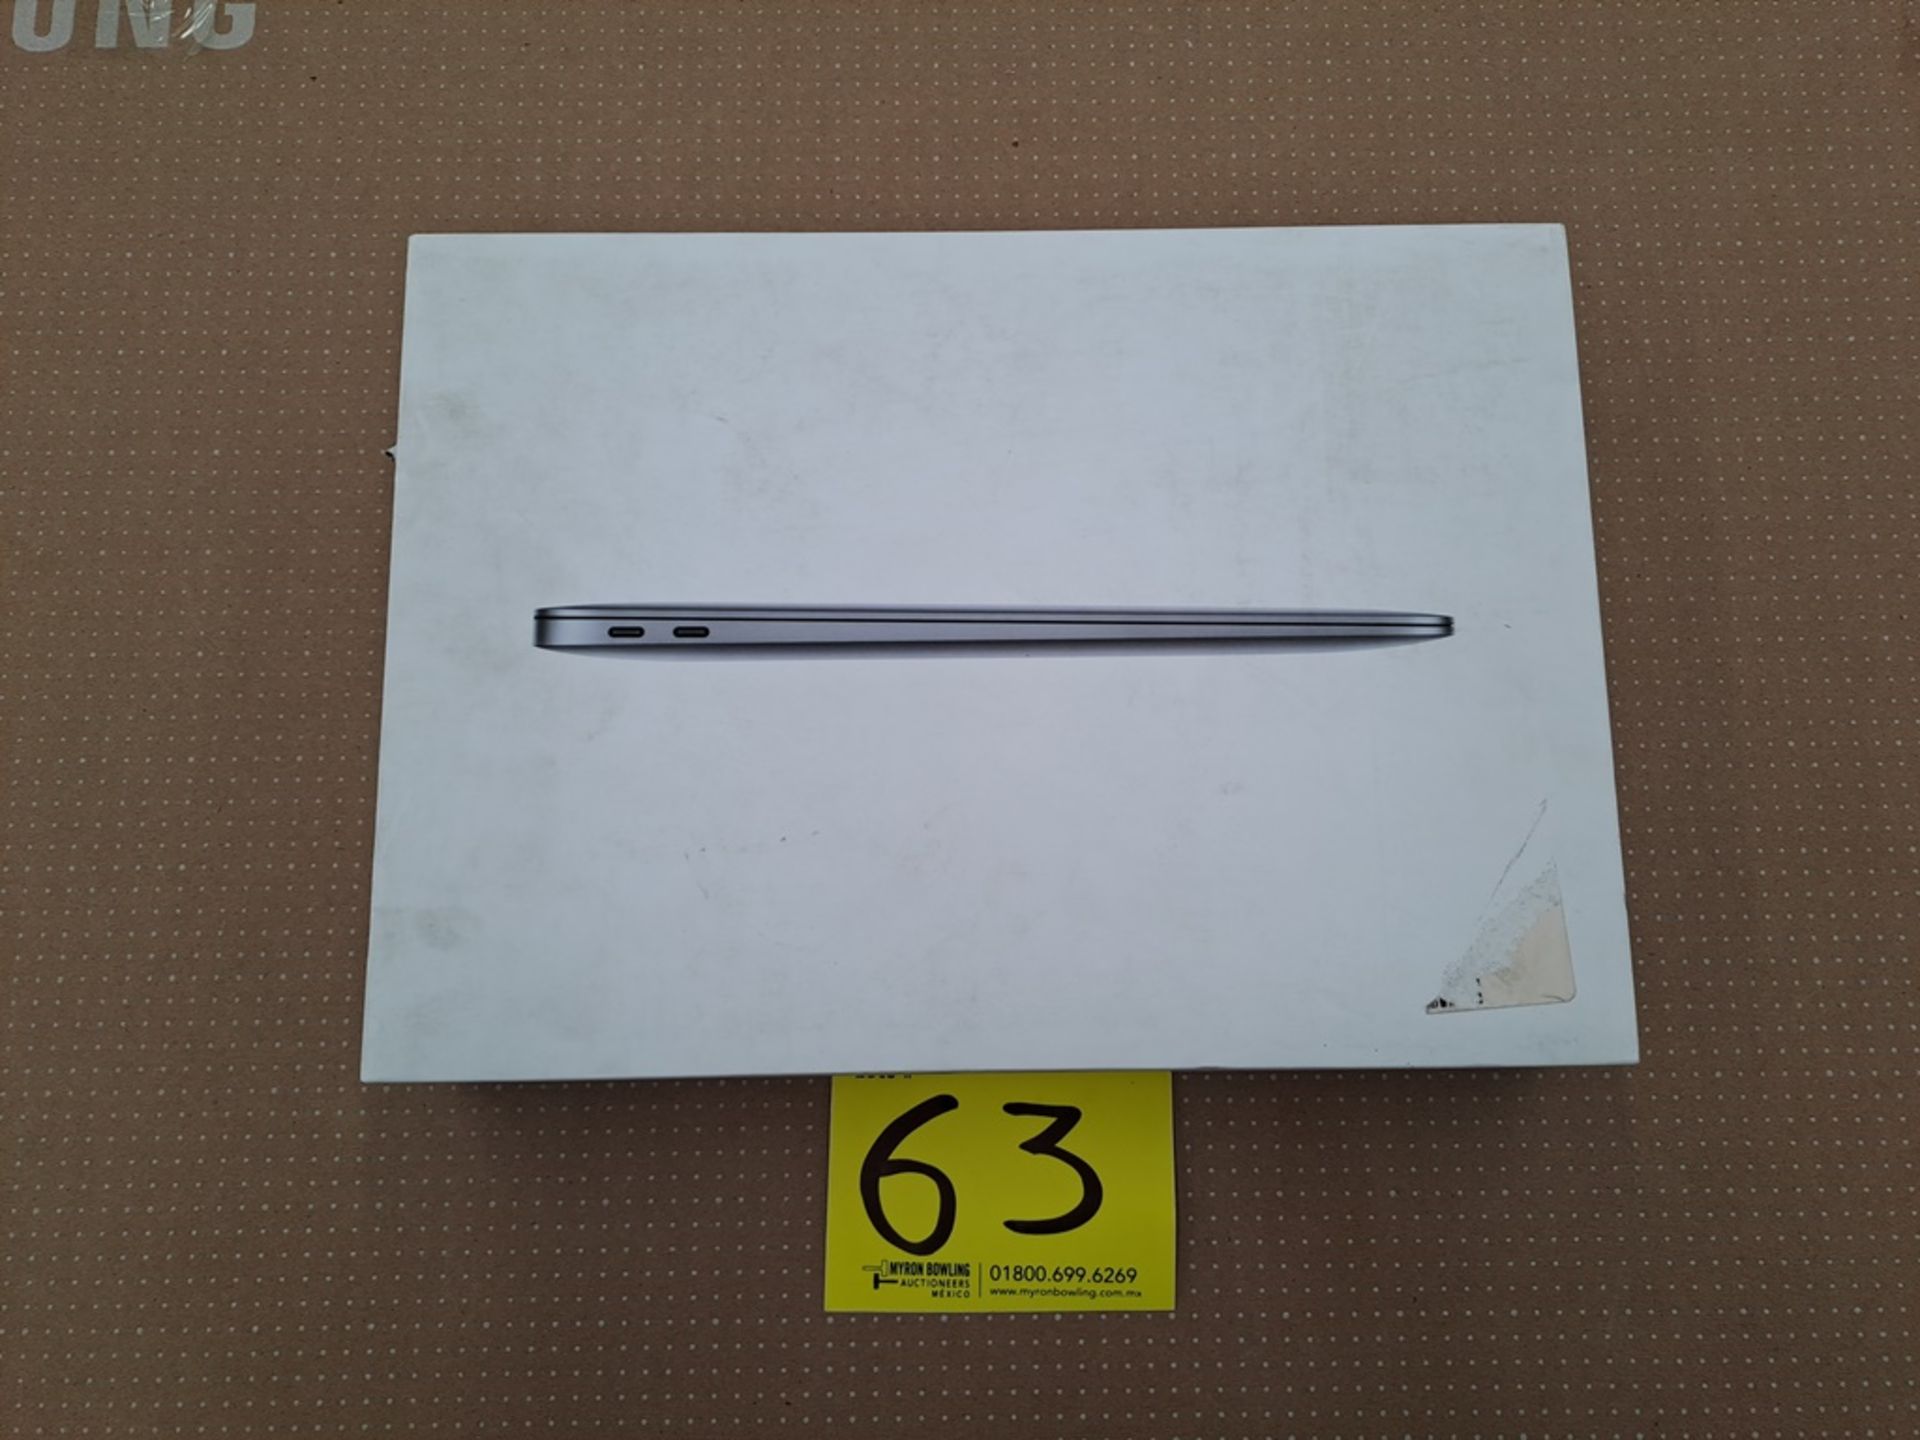 Lote de 1 MacBook Air de 256 GB, Serie FVFKQRNK1WFV (No se asegura su funcionamiento, favor de insp - Image 3 of 8